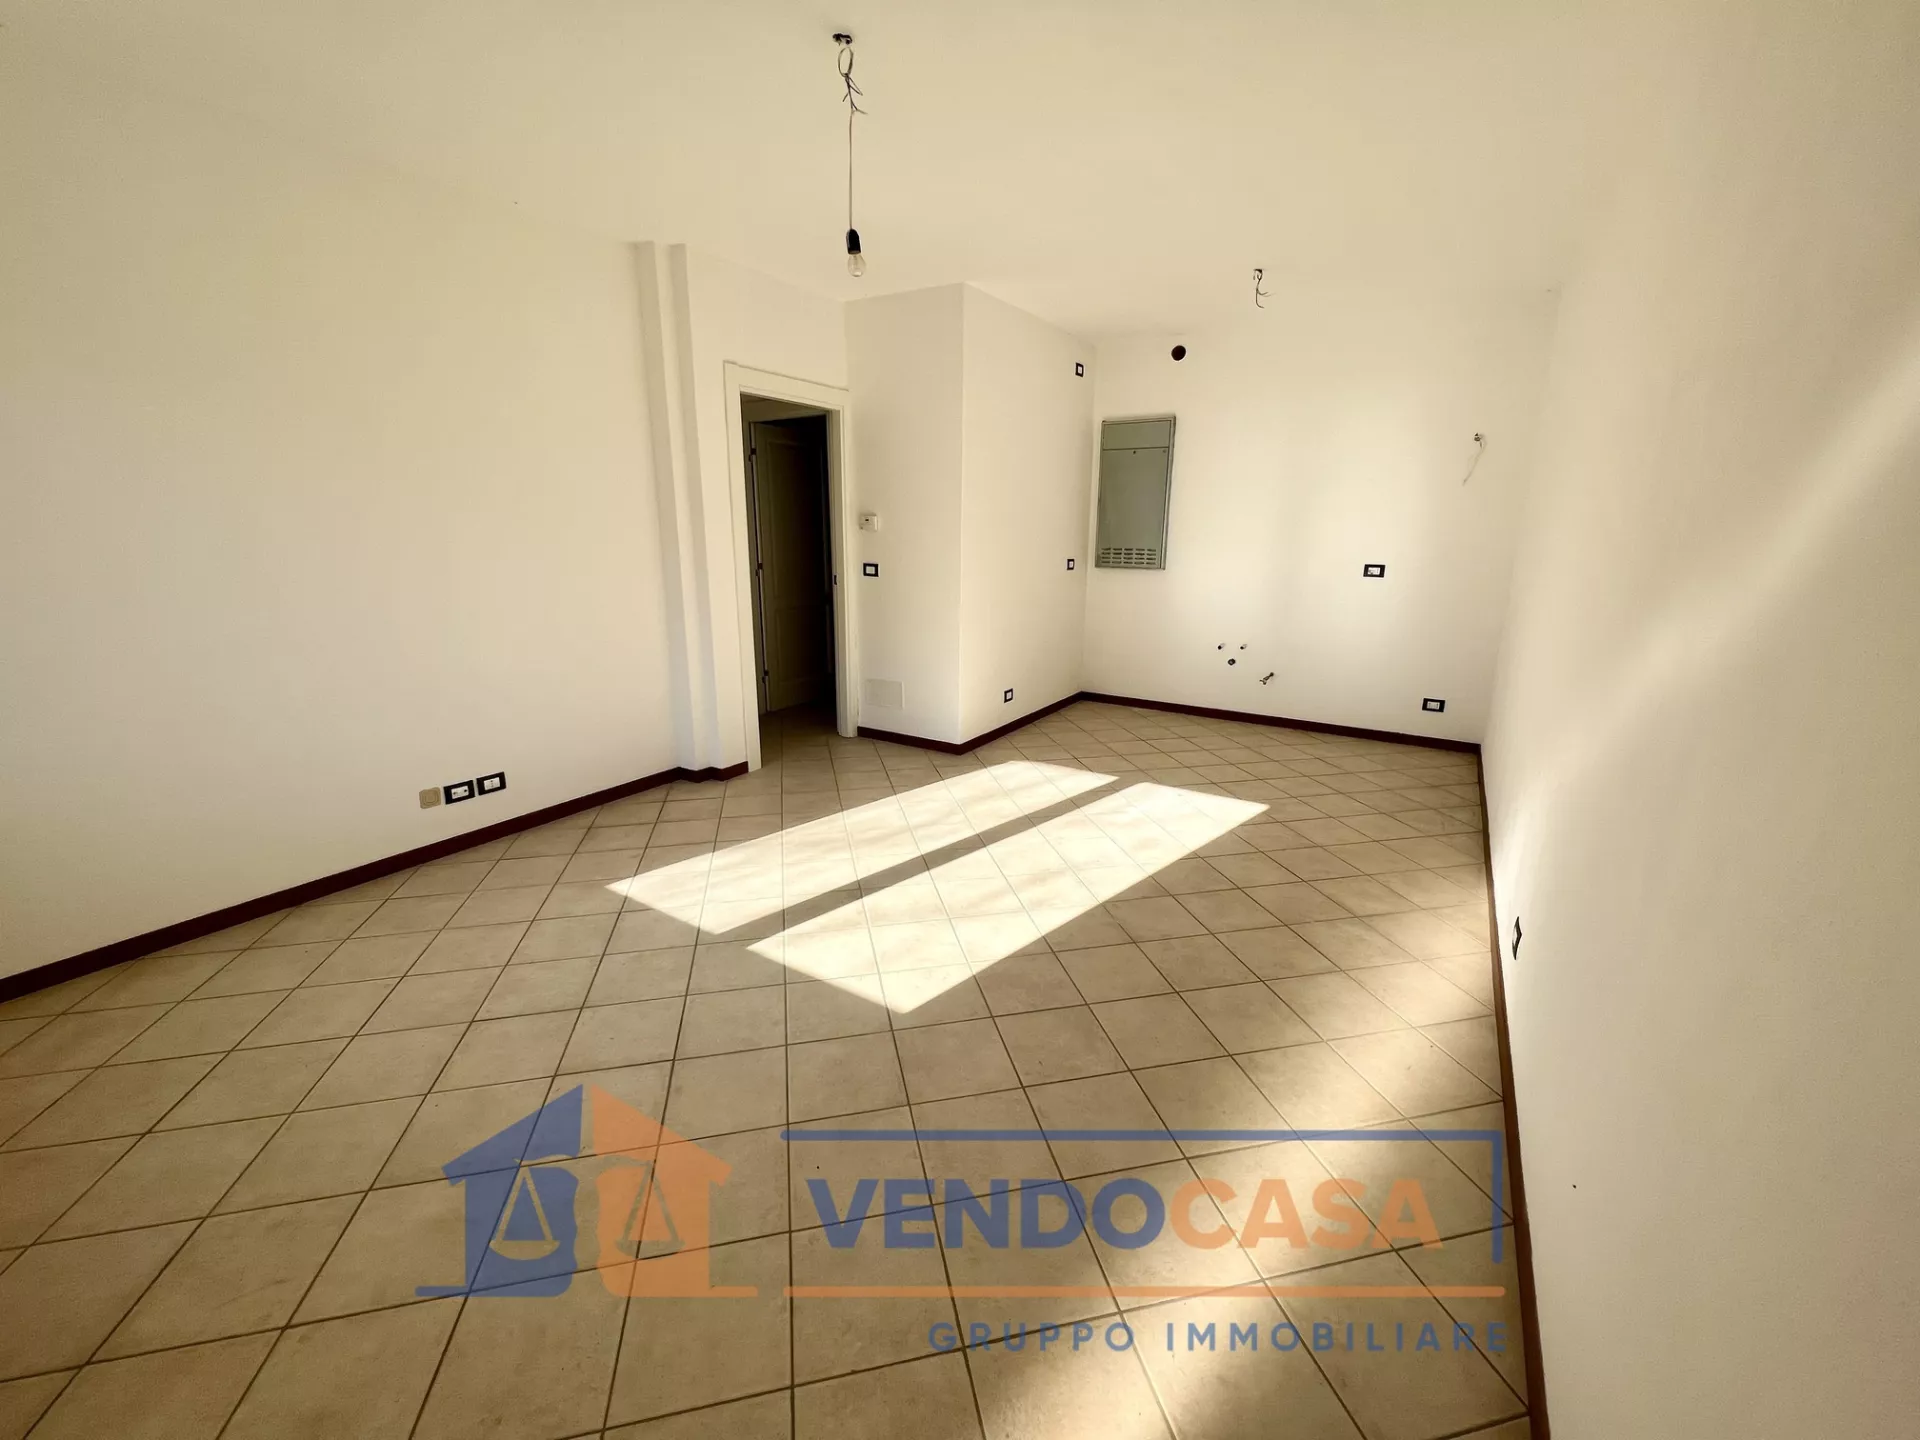 Immagine per Appartamento in vendita a Valdieri via Divisione Alpina Cunensee 38